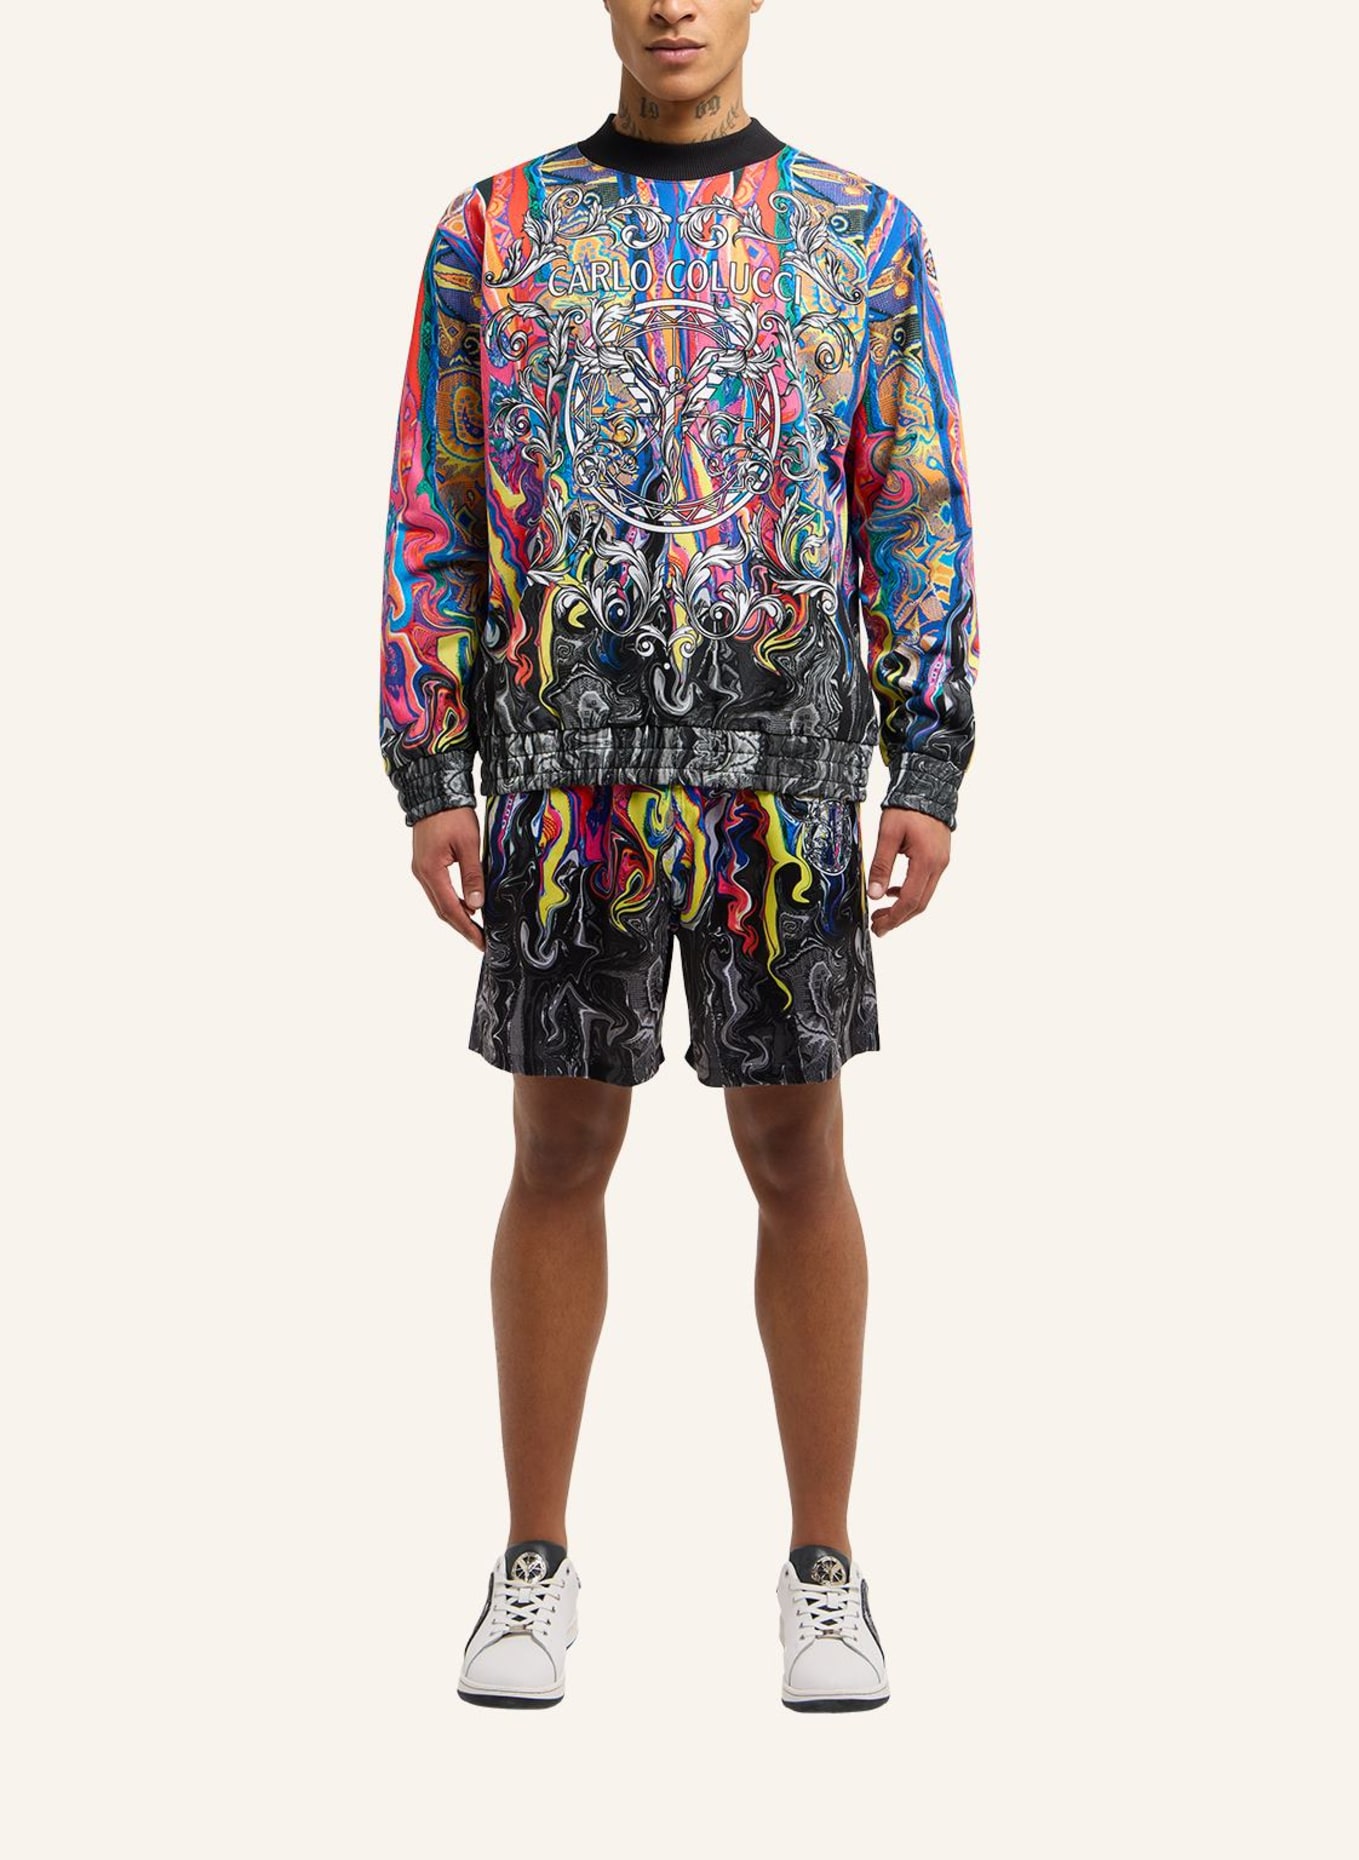 CARLO COLUCCI Sweatshirt "Fusion" DEMATTE, Farbe: ROT (Bild 4)